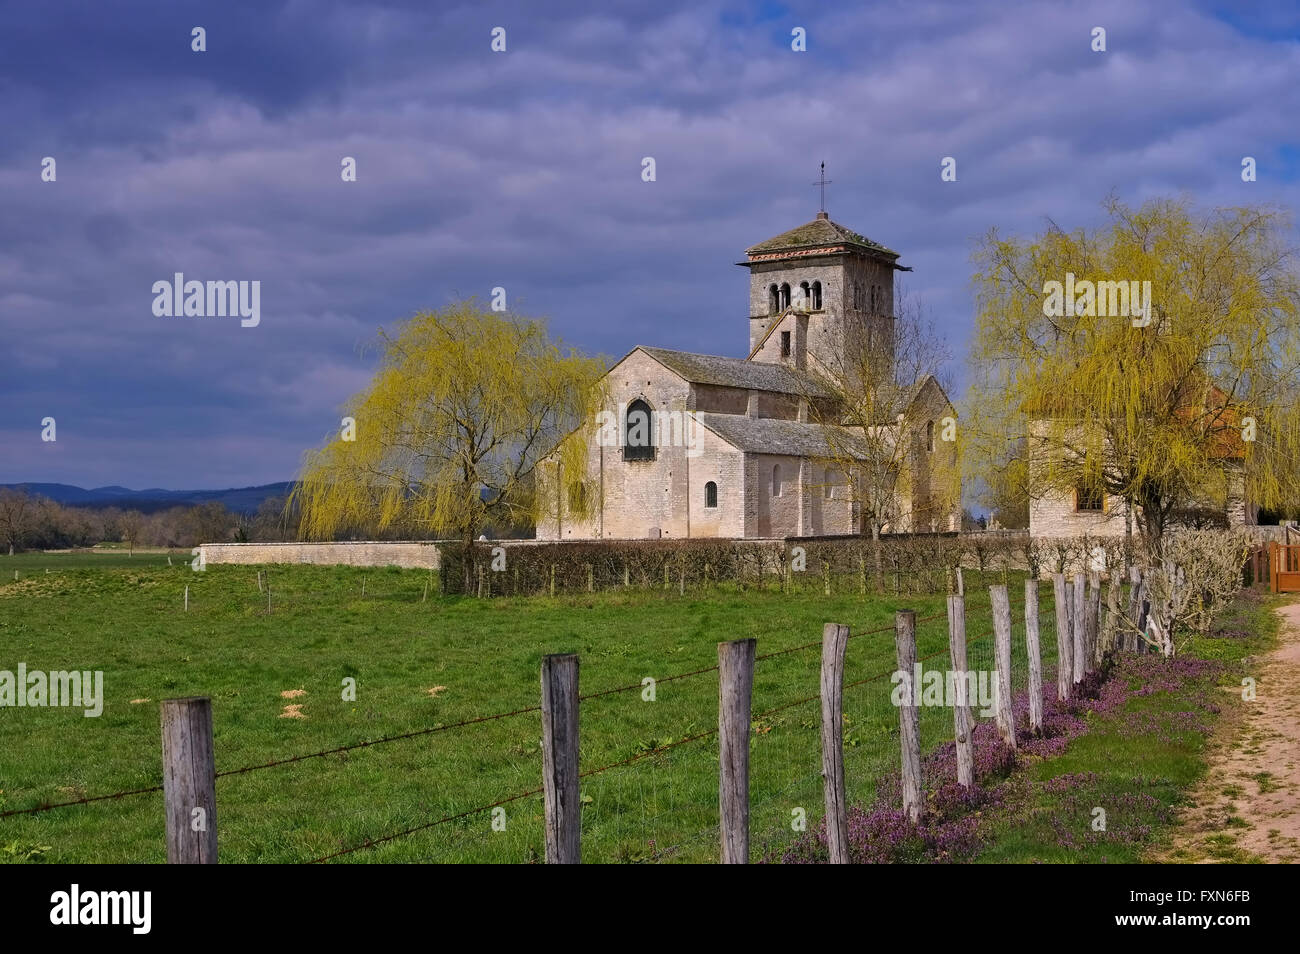 Romanische Kirche in Malay Burgund, Frankreich - romanica Chiesa malese in Borgogna, Francia Foto Stock